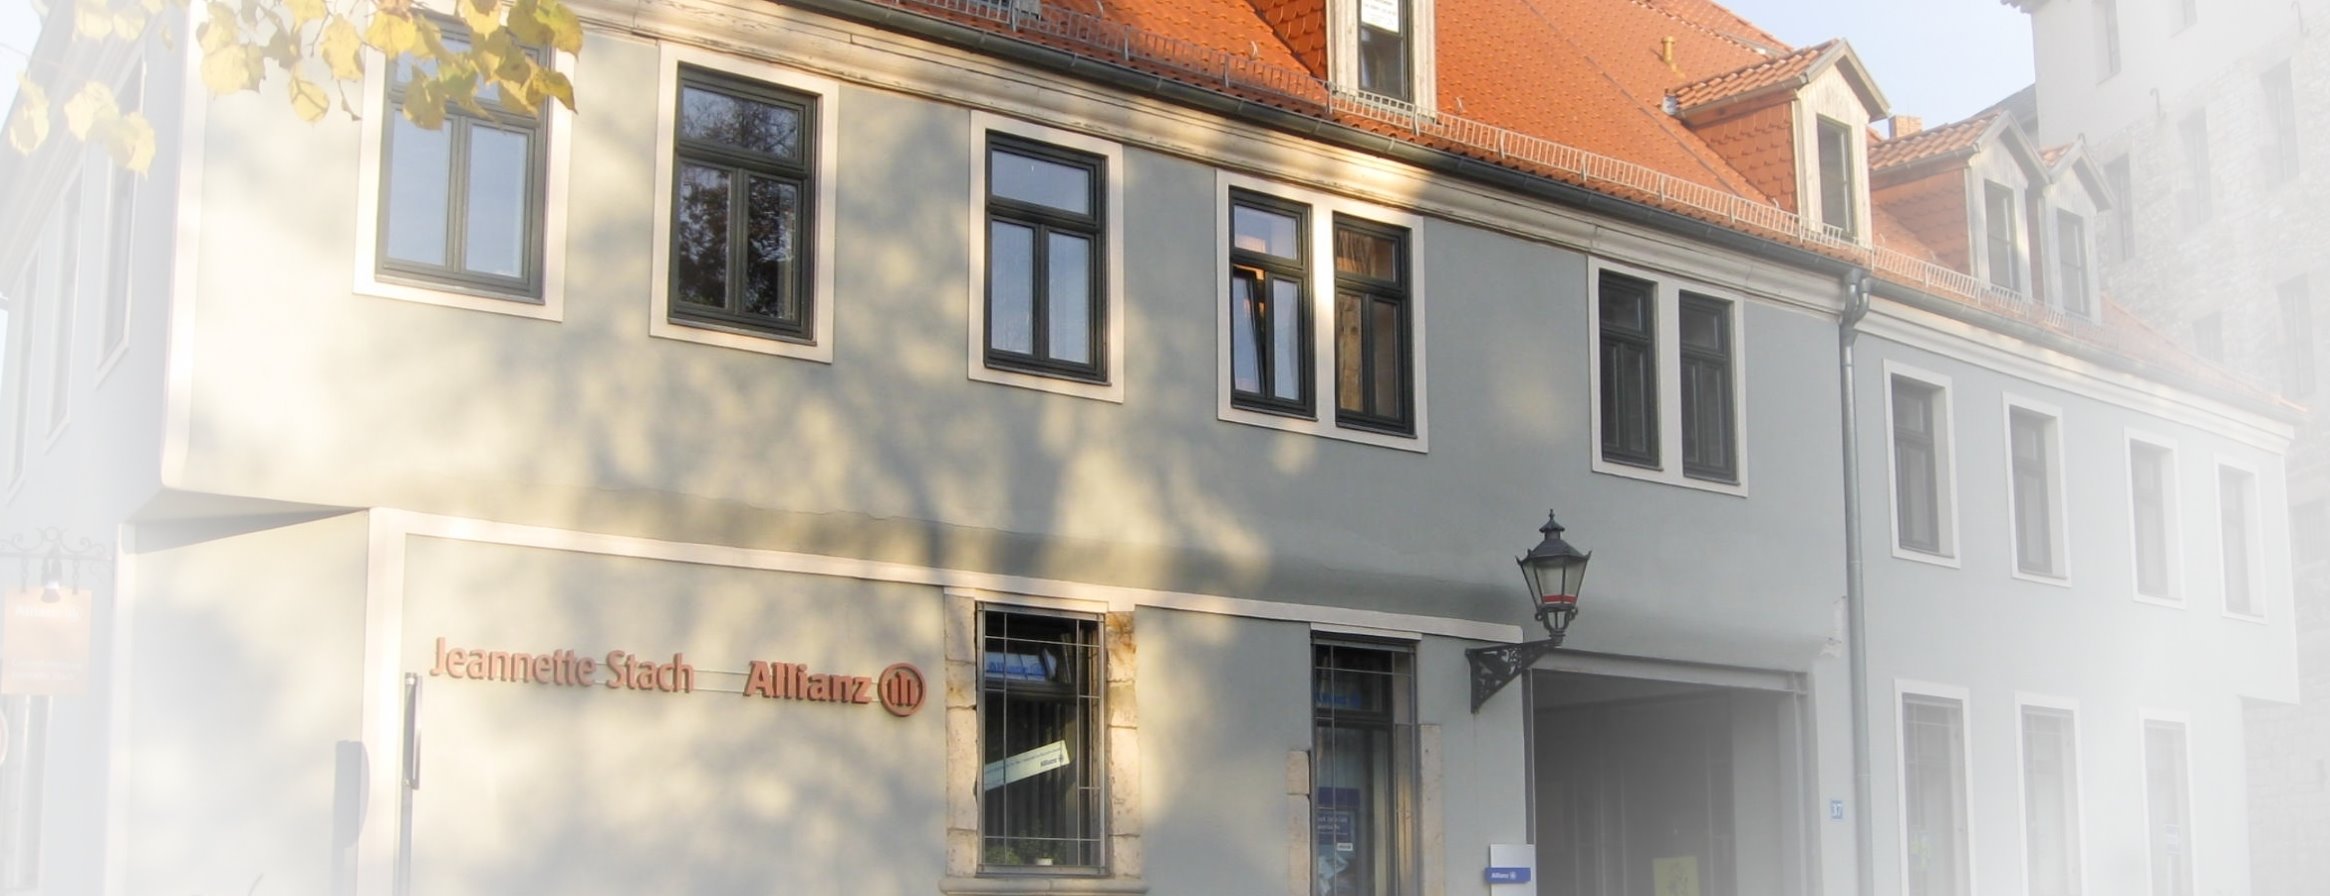 Allianz Versicherung Jeannette Stach Halberstadt - Titelbild